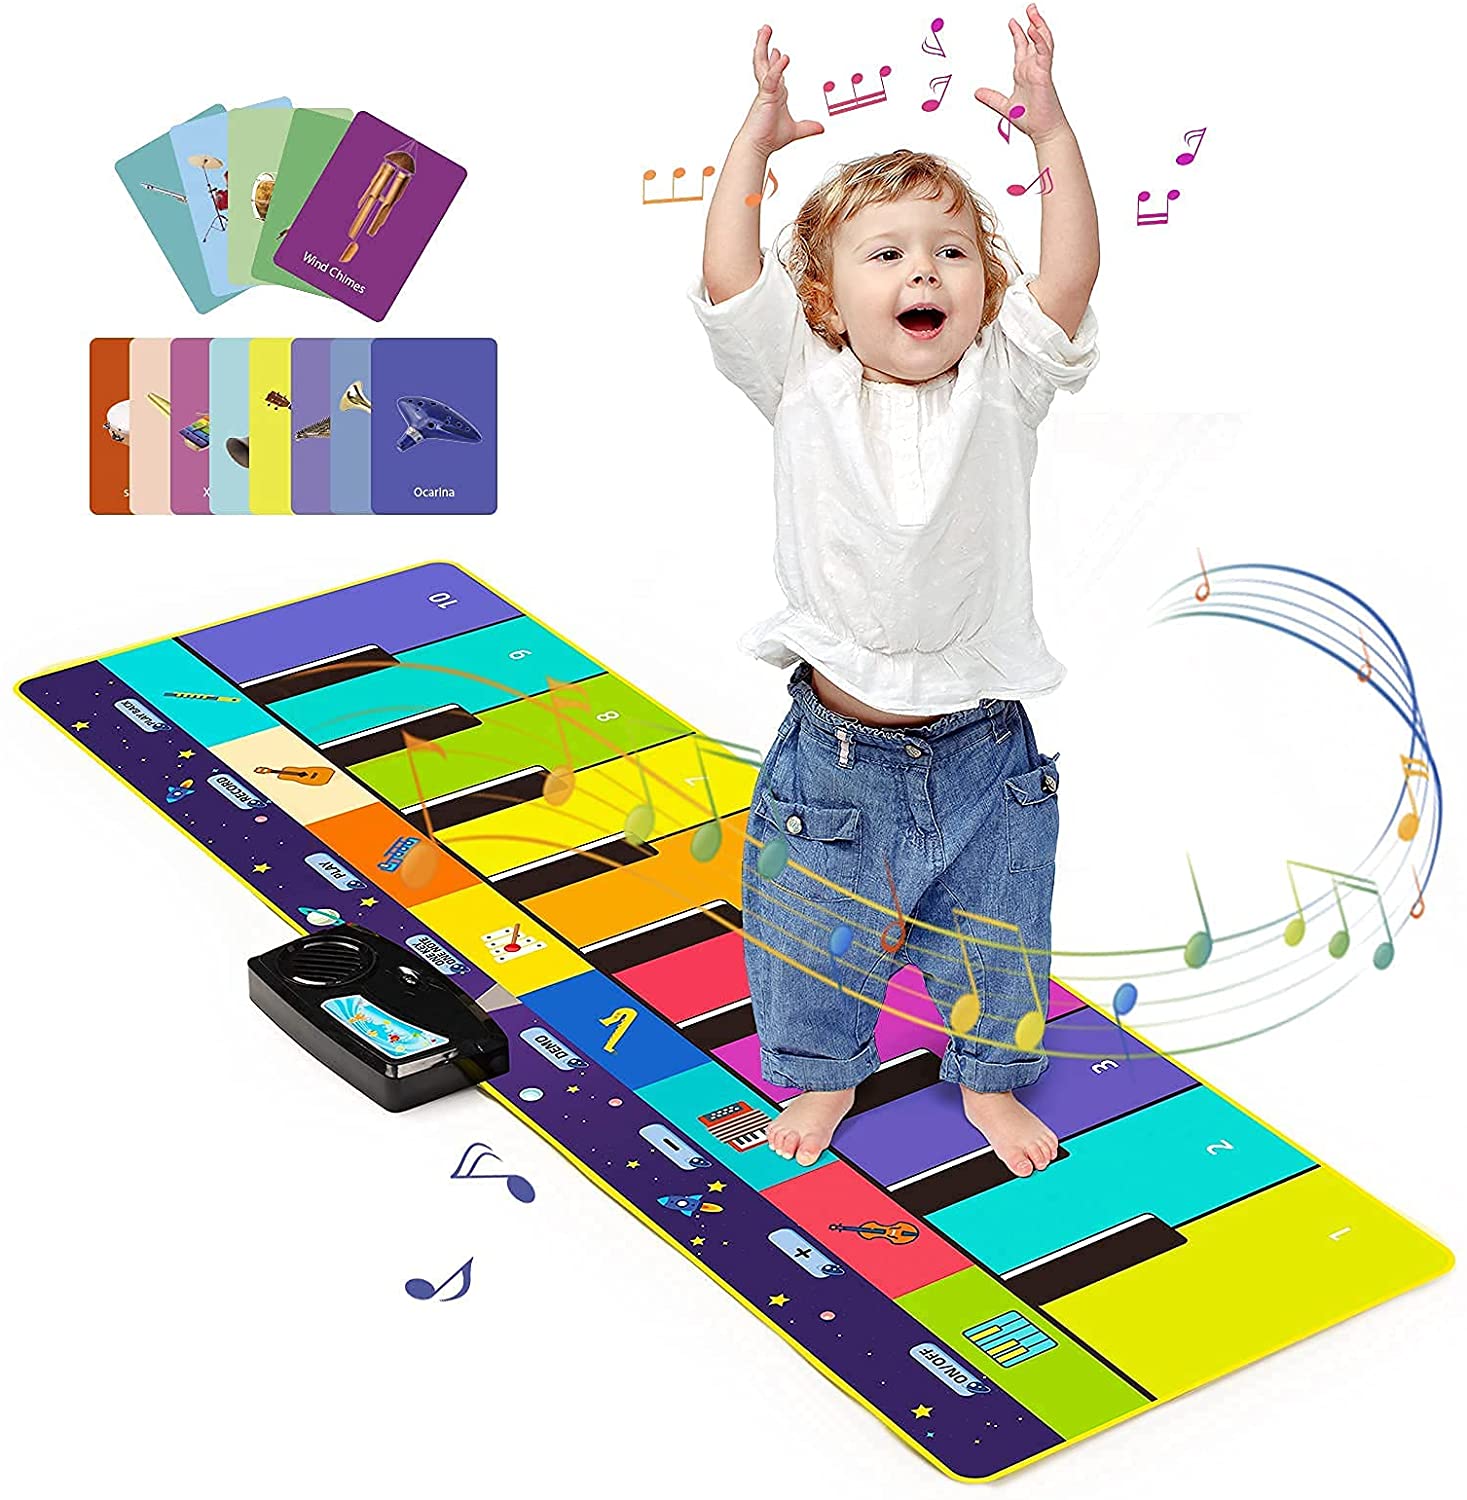 שטיח מוזיקלי לילדים